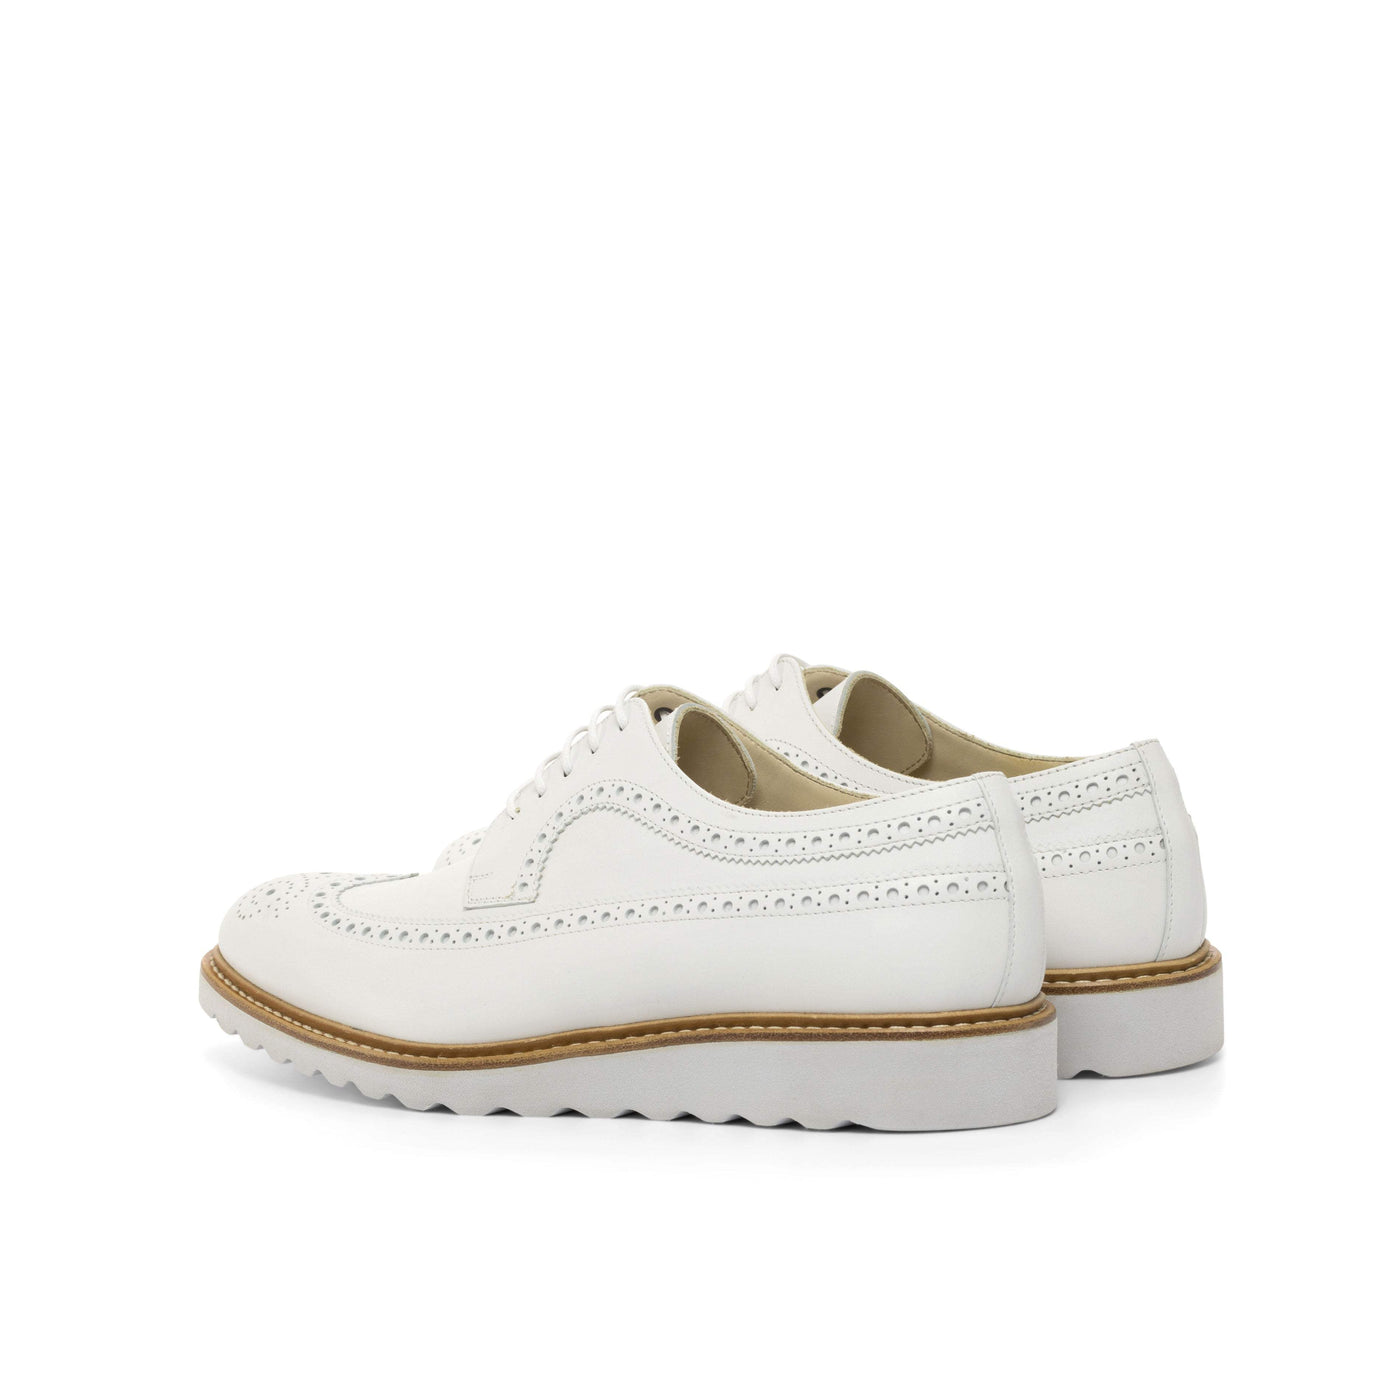 Men's Longwing Blucher Shoes Leather White 4731 4- MERRIMIUM